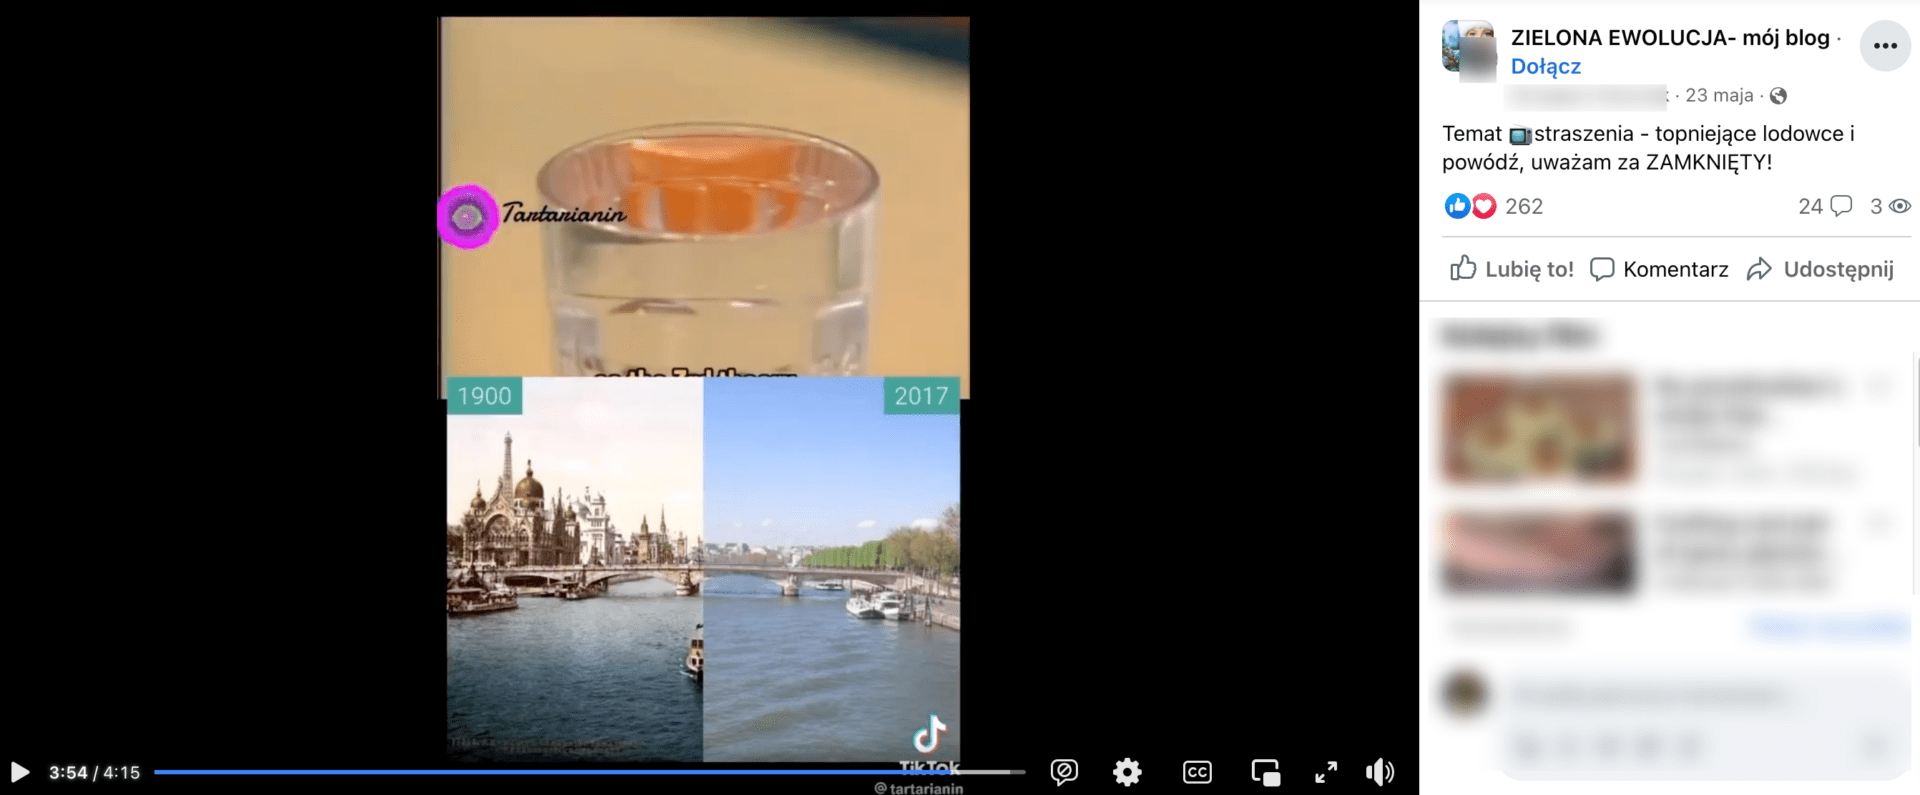 Zrzut ekranu posta, w którym zamieszczono omawiane nagranie. Widoczni są mężczyzna w pomarańczowym swetrze i chłopiec w pomarańczowym swetrze z wzorami. Pod nimi widać dwa zdjęcia rzeki: z 1900 i 2017 roku.